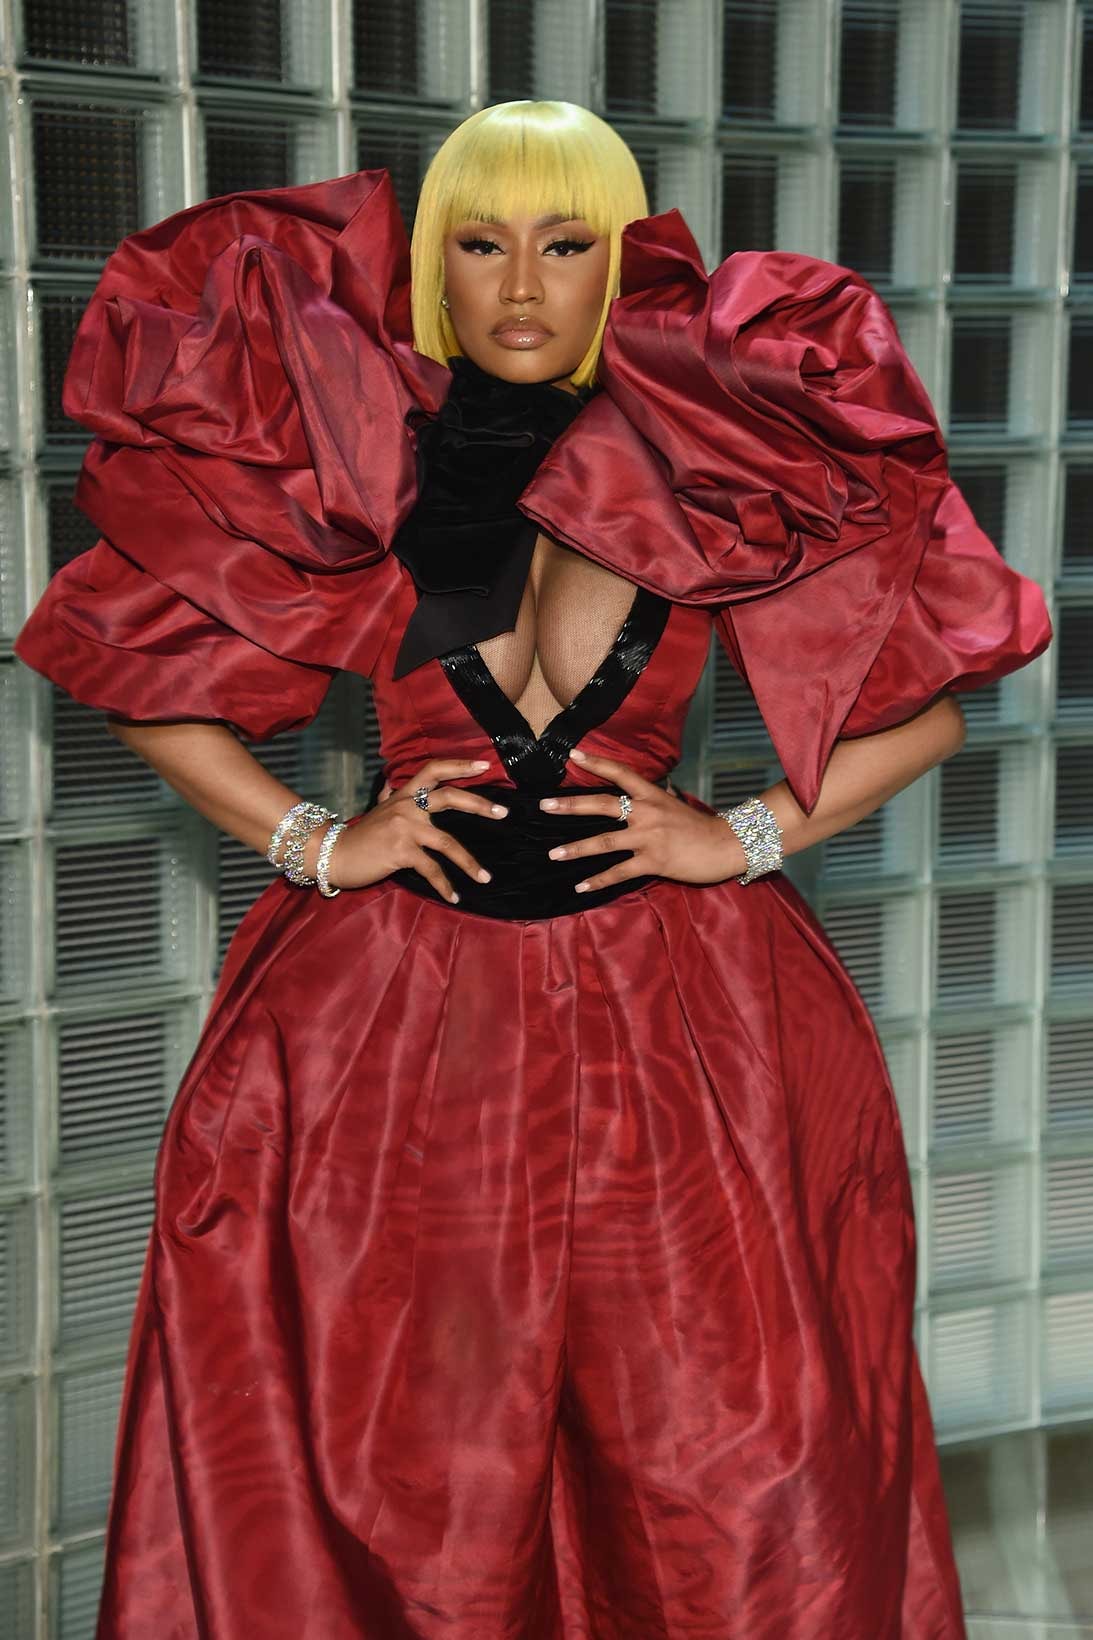 Nicki Minaj's Best Fashion Moments [PHOTOS] – WWD